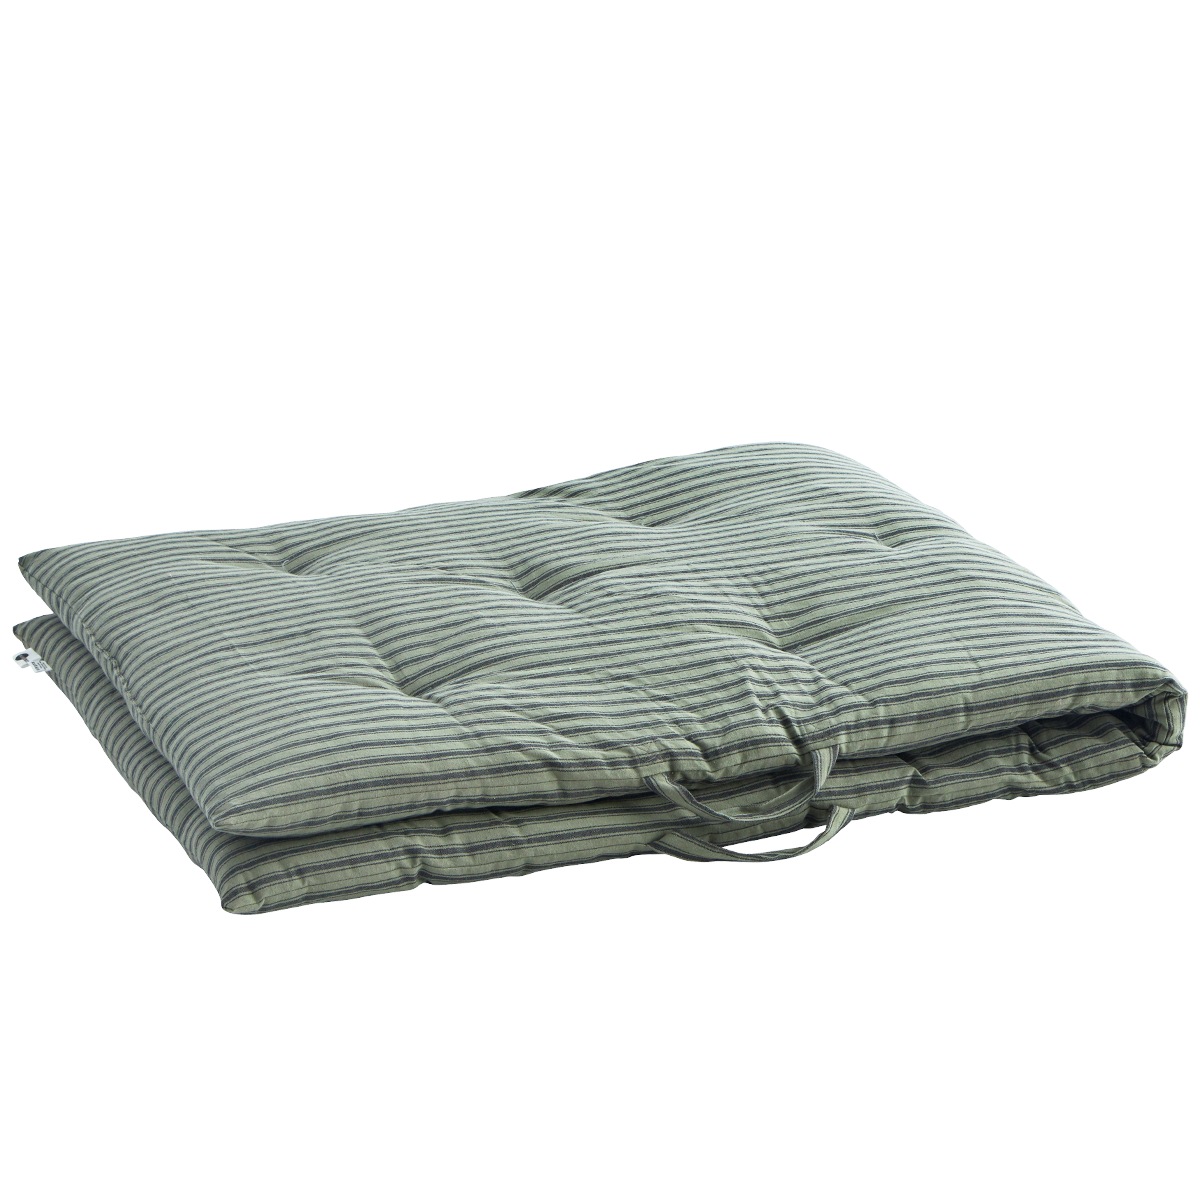 Cushion 70x180 cm, Green/Grey